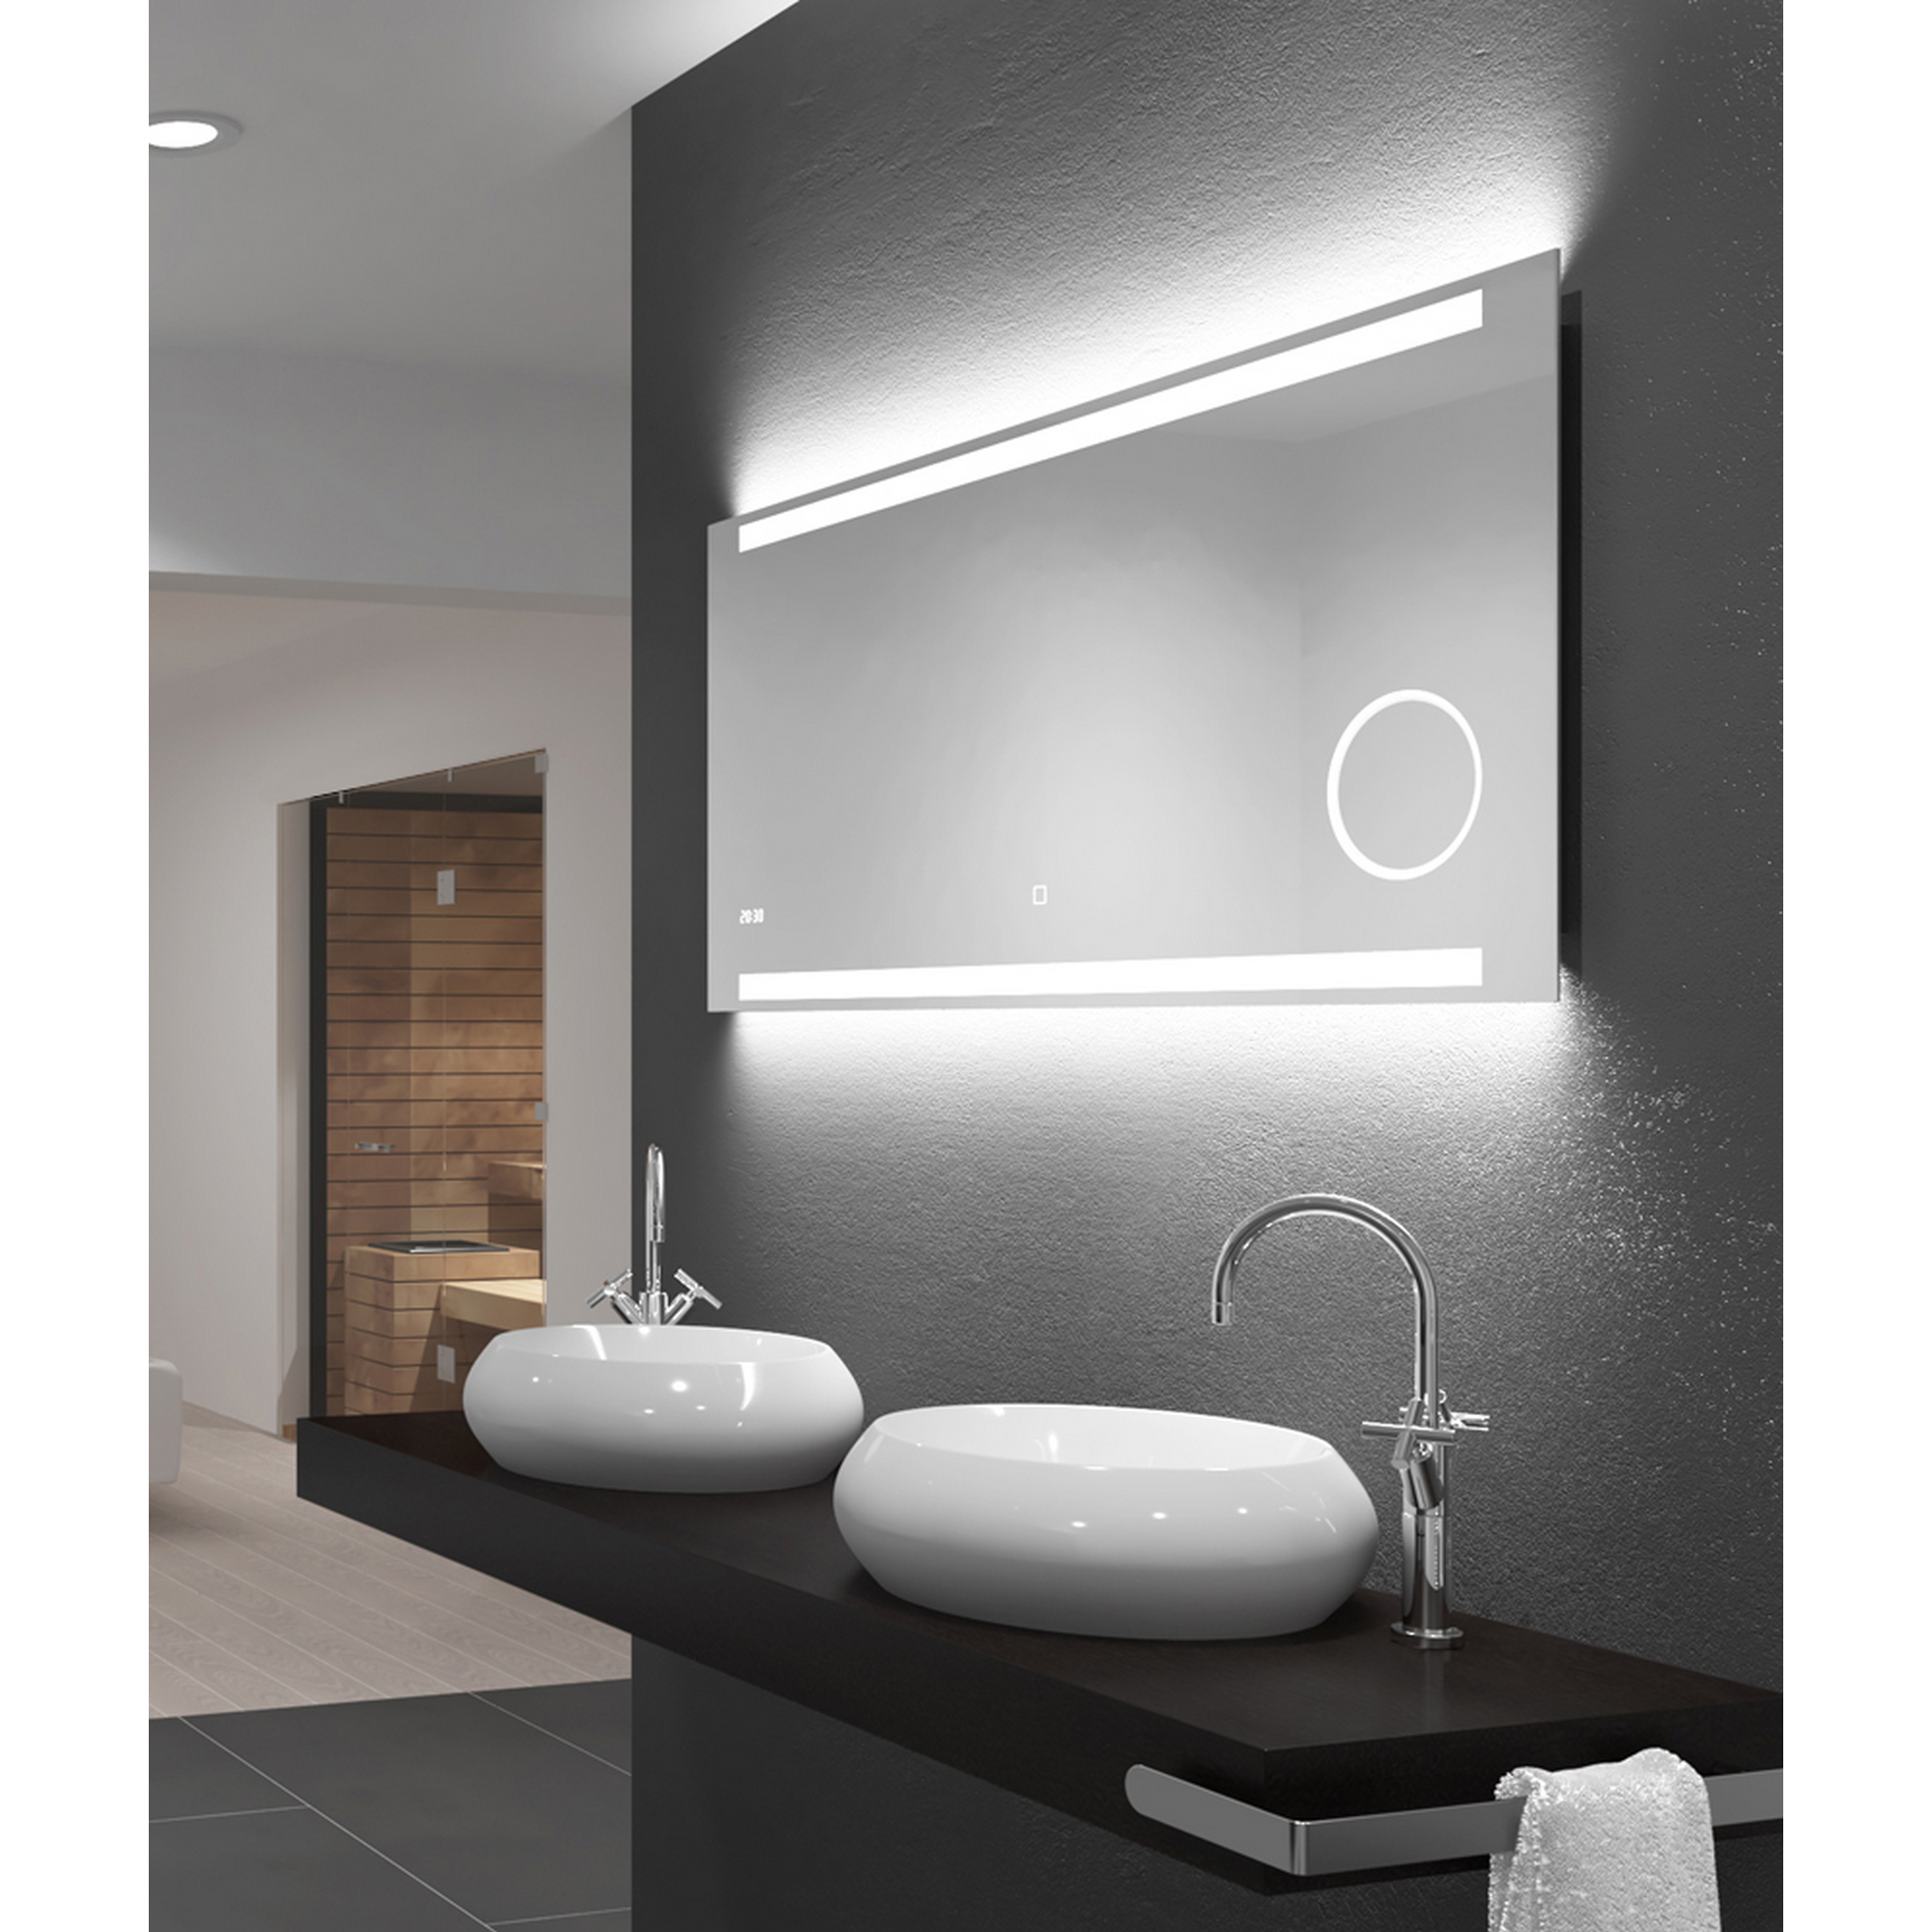 LED-Spiegel 'Silver Style' mit Uhr und Kosmetikspiegel 120 x 60 cm + product picture